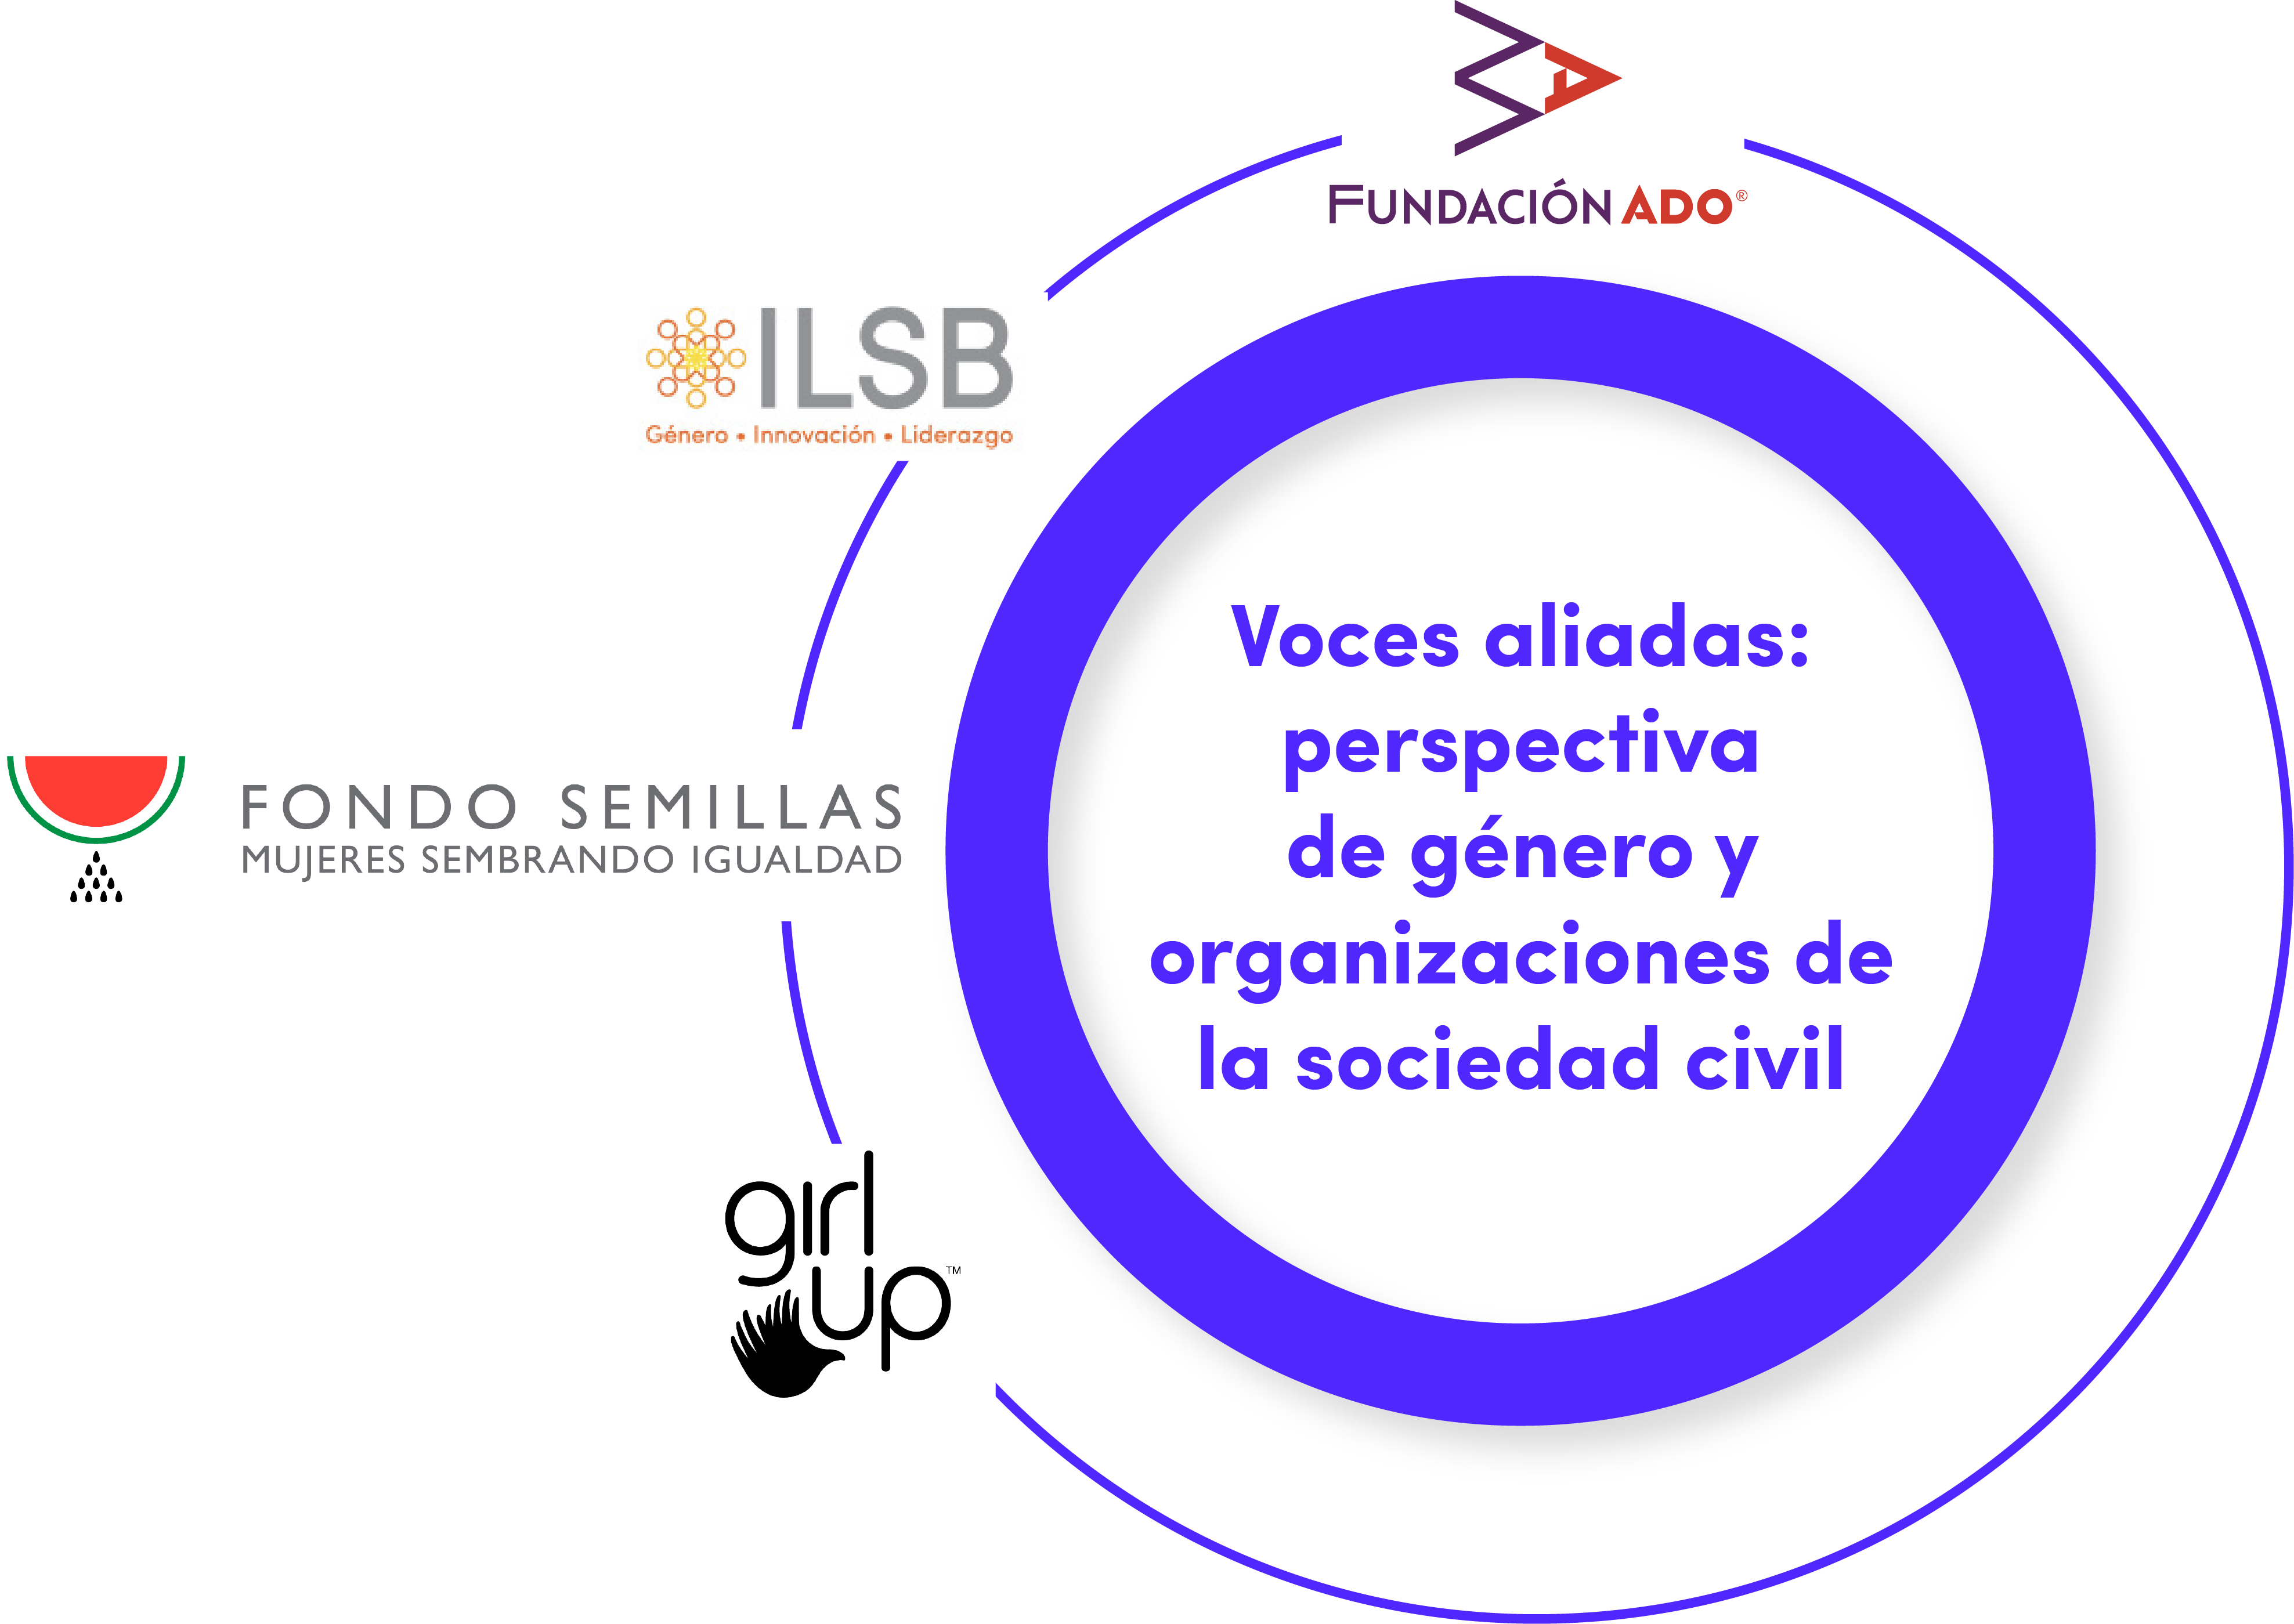 Voces aliadas: perspectiva de género y organizaciones de la sociedad civil.
Logos de Fundación ADO, ILSB, Fondo Semillas y Girl Up.